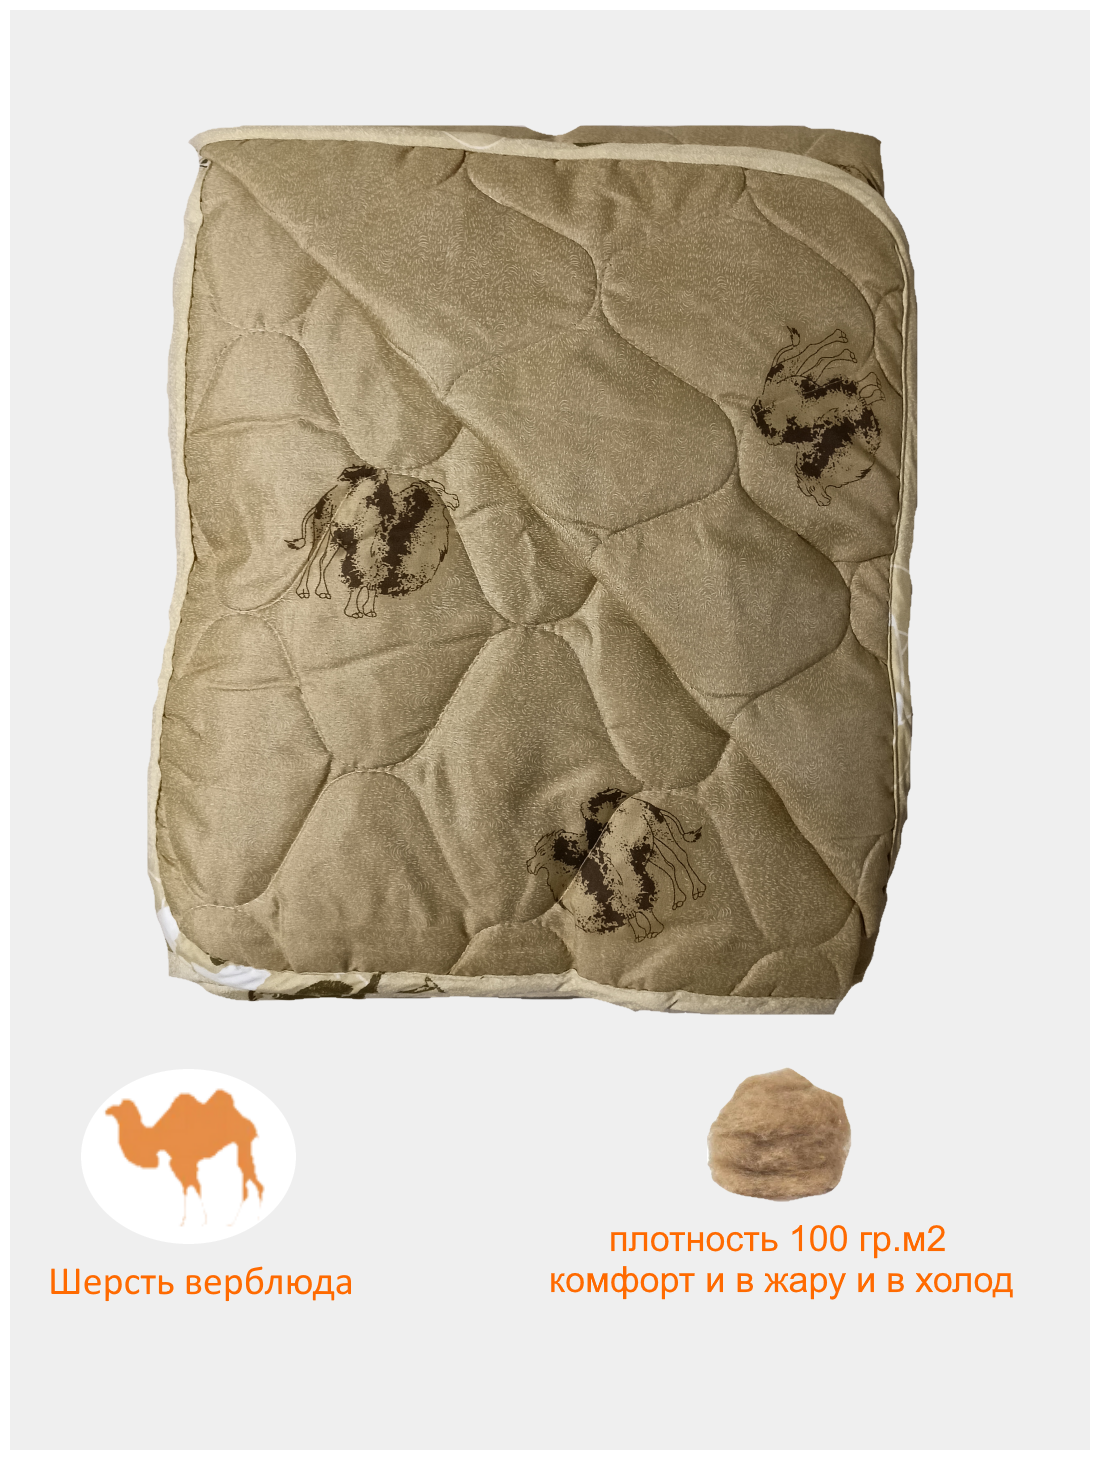 Одеяло из верблюжьей шерсти лето, осень, весна стеганое 100 гр.м2 - фотография № 1